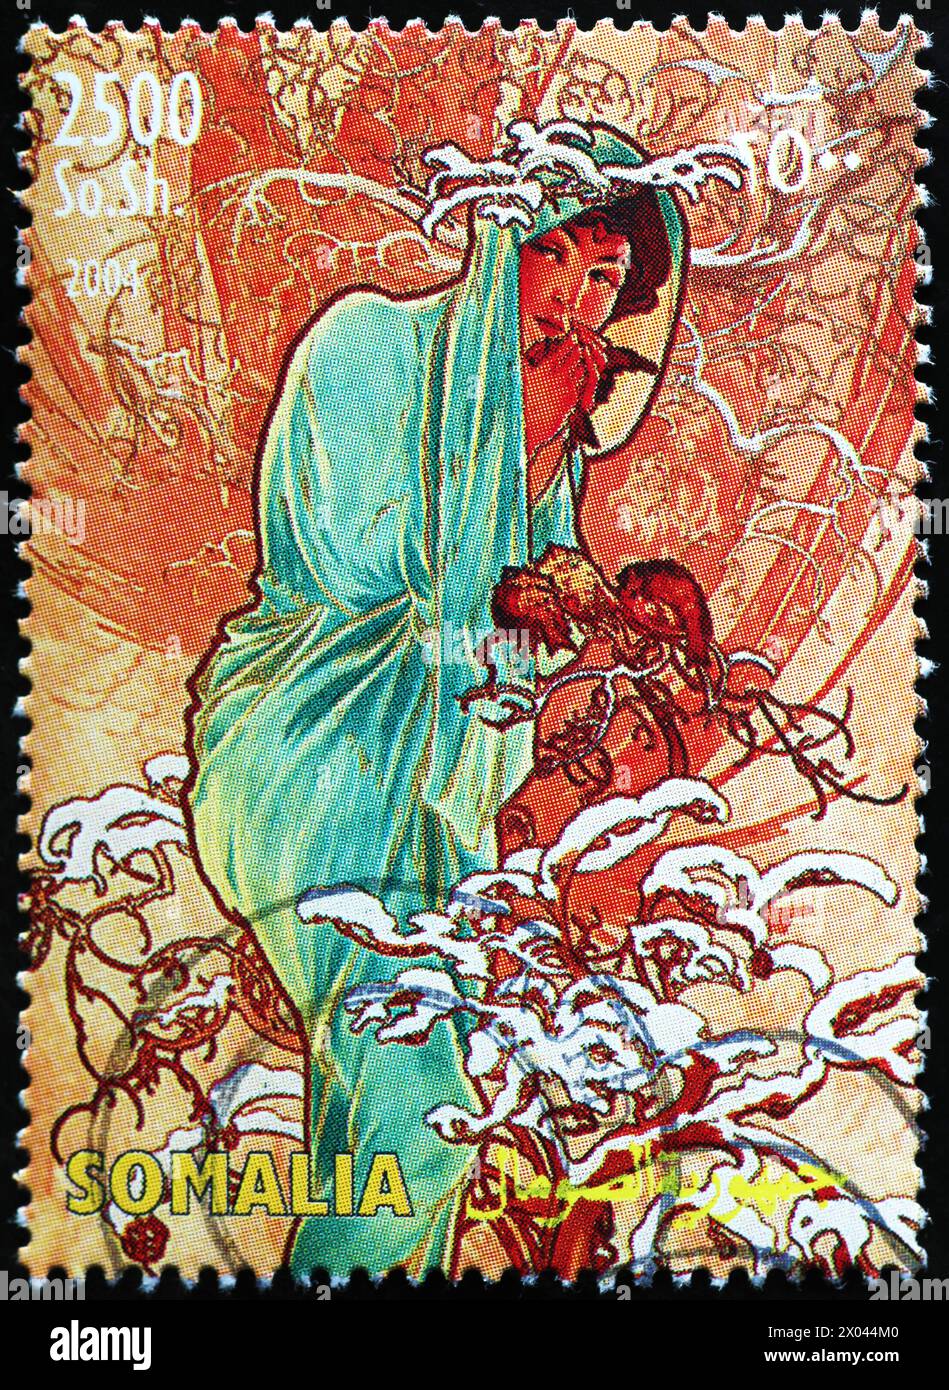 Image de Alfons Mucha sur timbre-poste somalien Banque D'Images